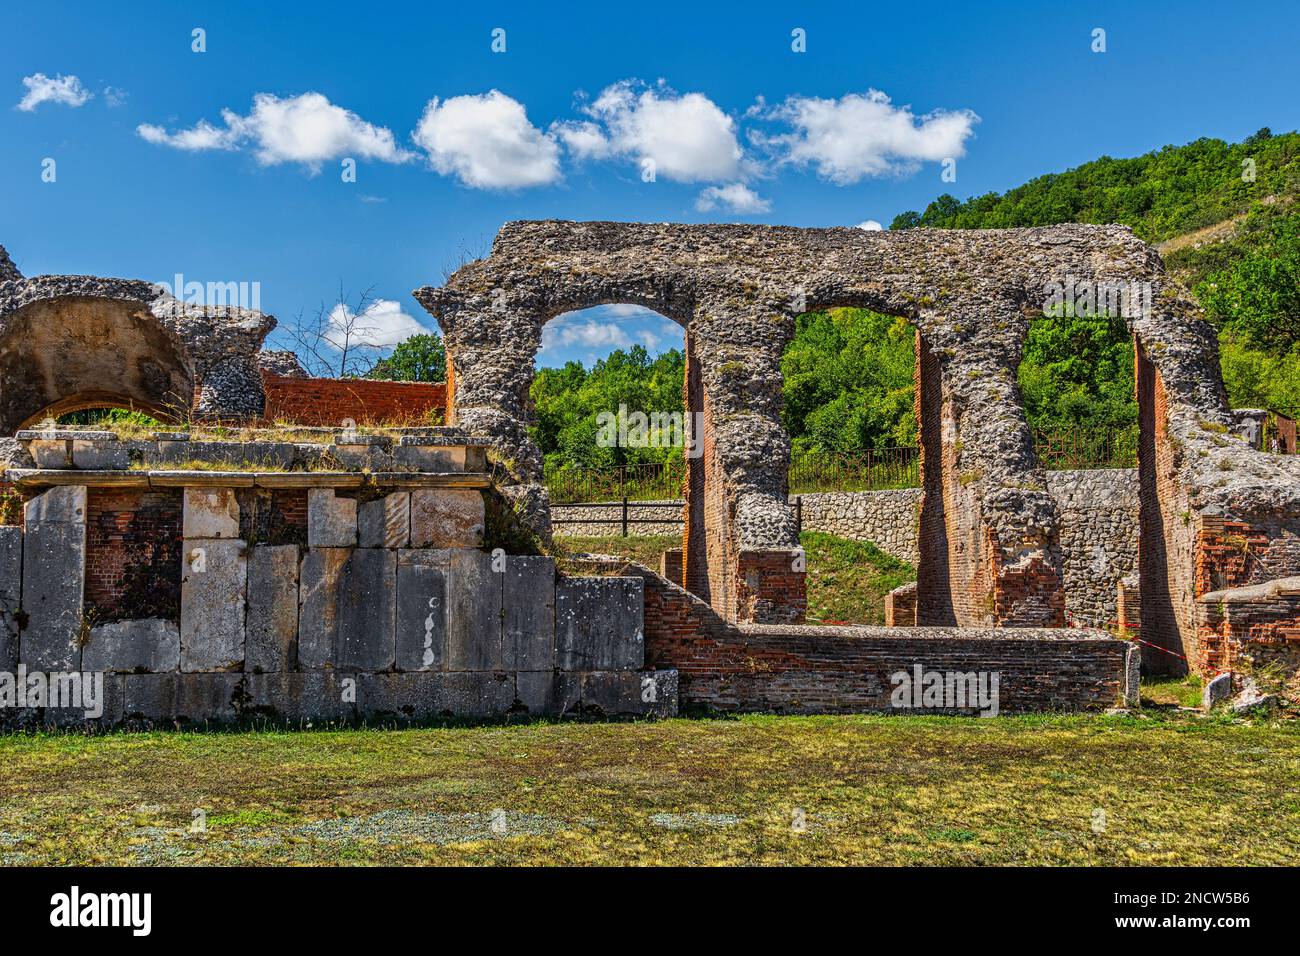 Il sito archeologico di Amiternum, antica città italica fondata dai Sabini, a nord dell'Aquila. San Vittorino, provincia dell'Aquila, Abruzzo, Ita Foto Stock